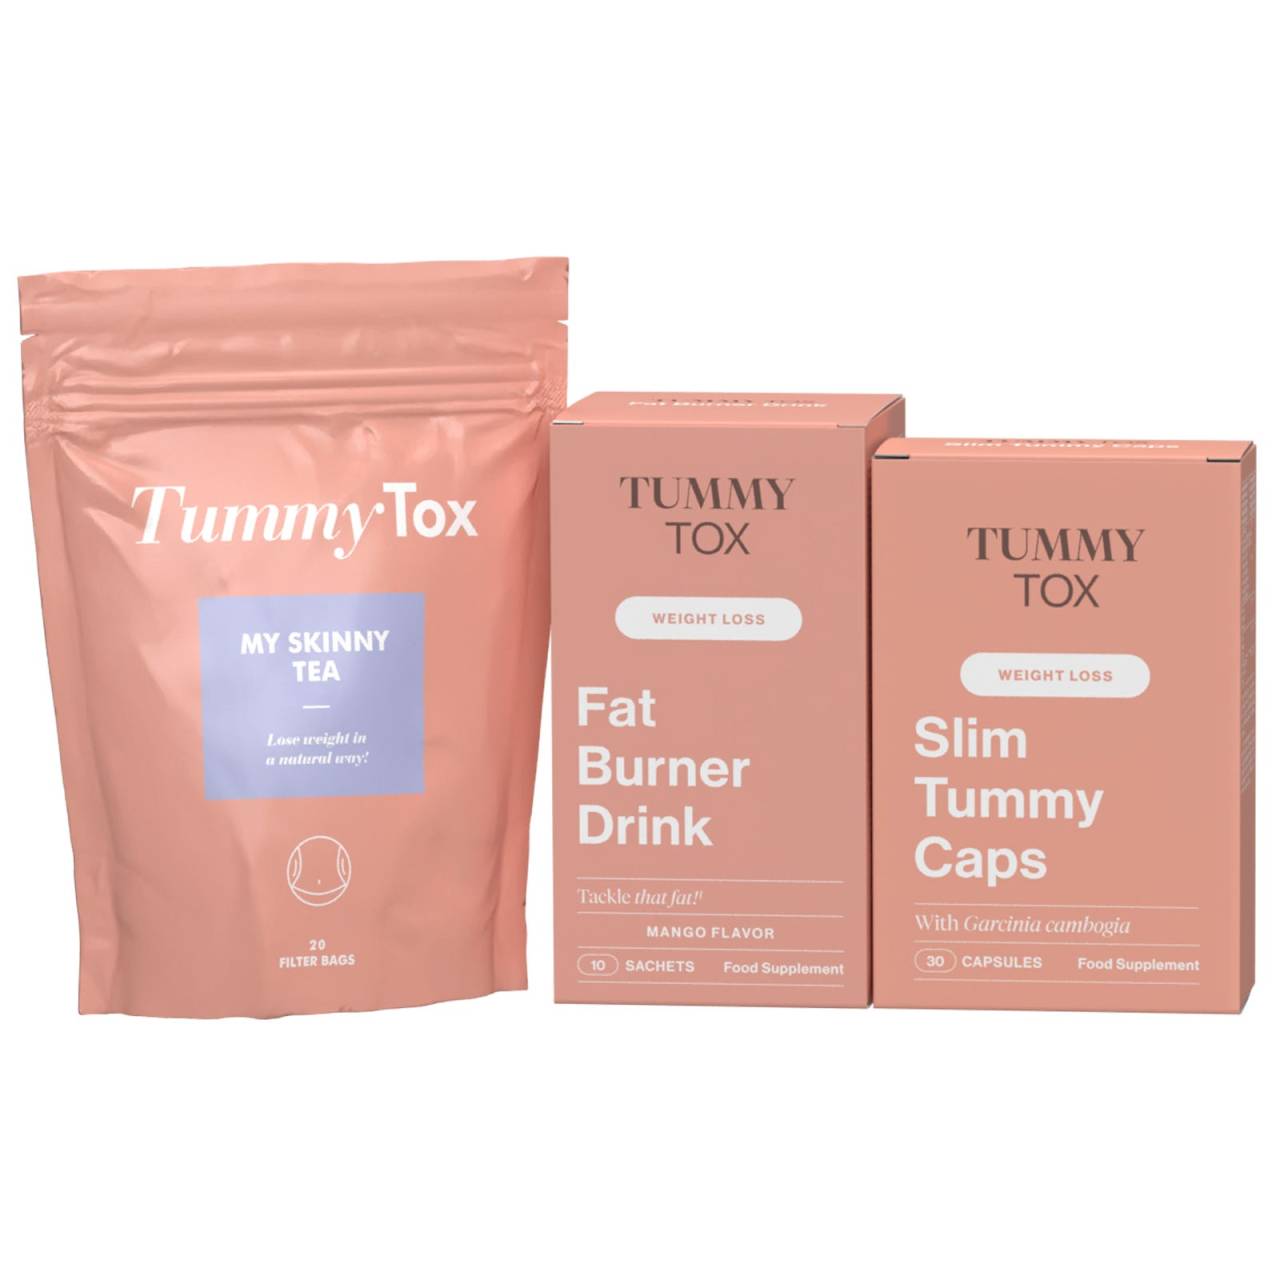 Pack para uma transformação completa | Transformação do corpo em 1 mês: queima gordura, purifica o corpo, e ajuda a perder peso | TummyTox.